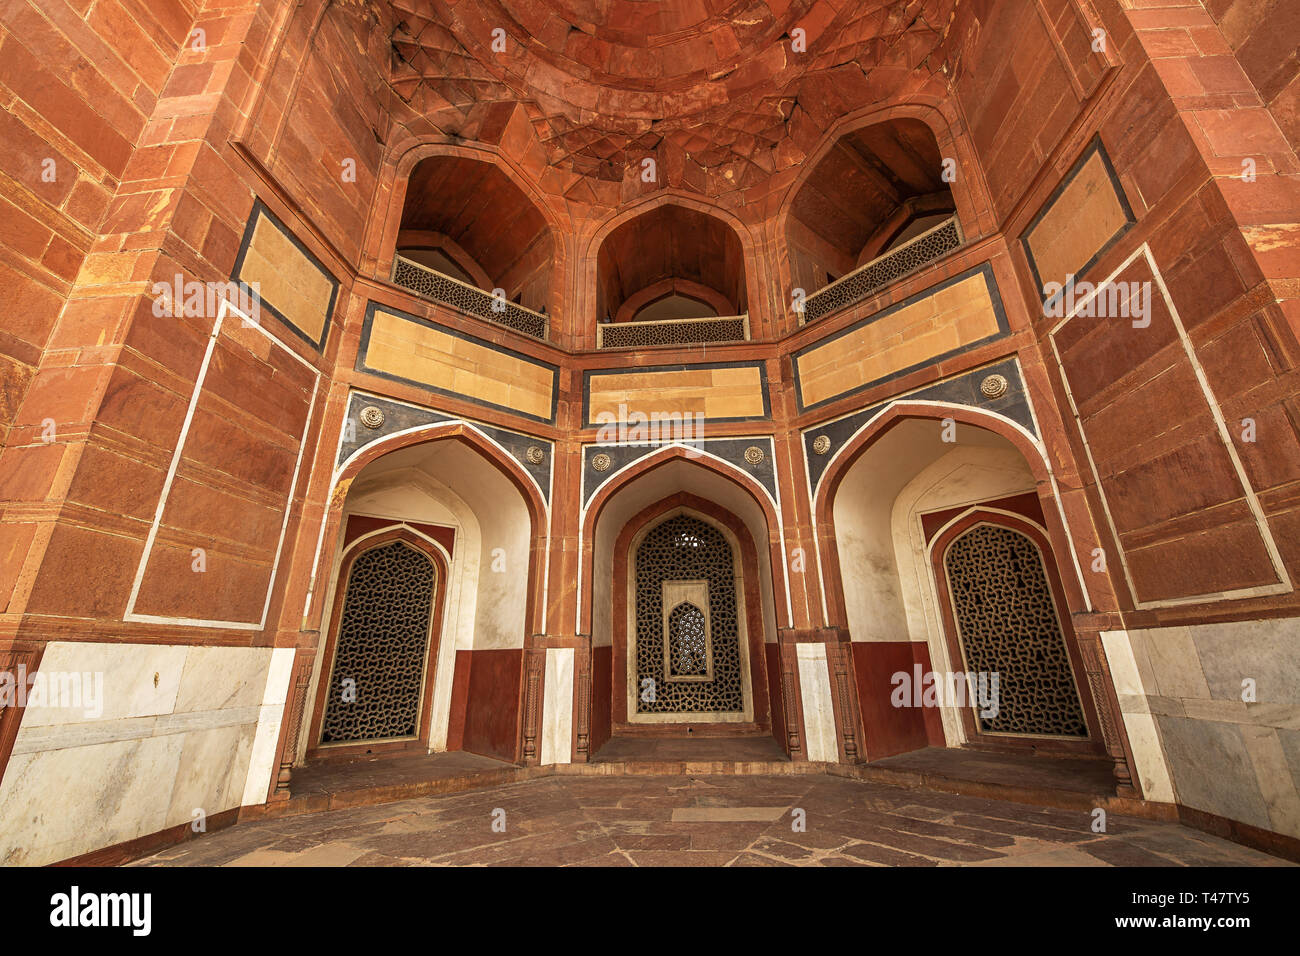 Humayun Grabmal Delhi Innenarchitektur aus Marmor und rotem Sandstein. Humayun Tomb ist ein UNESCO-Weltkulturerbe. Stockfoto